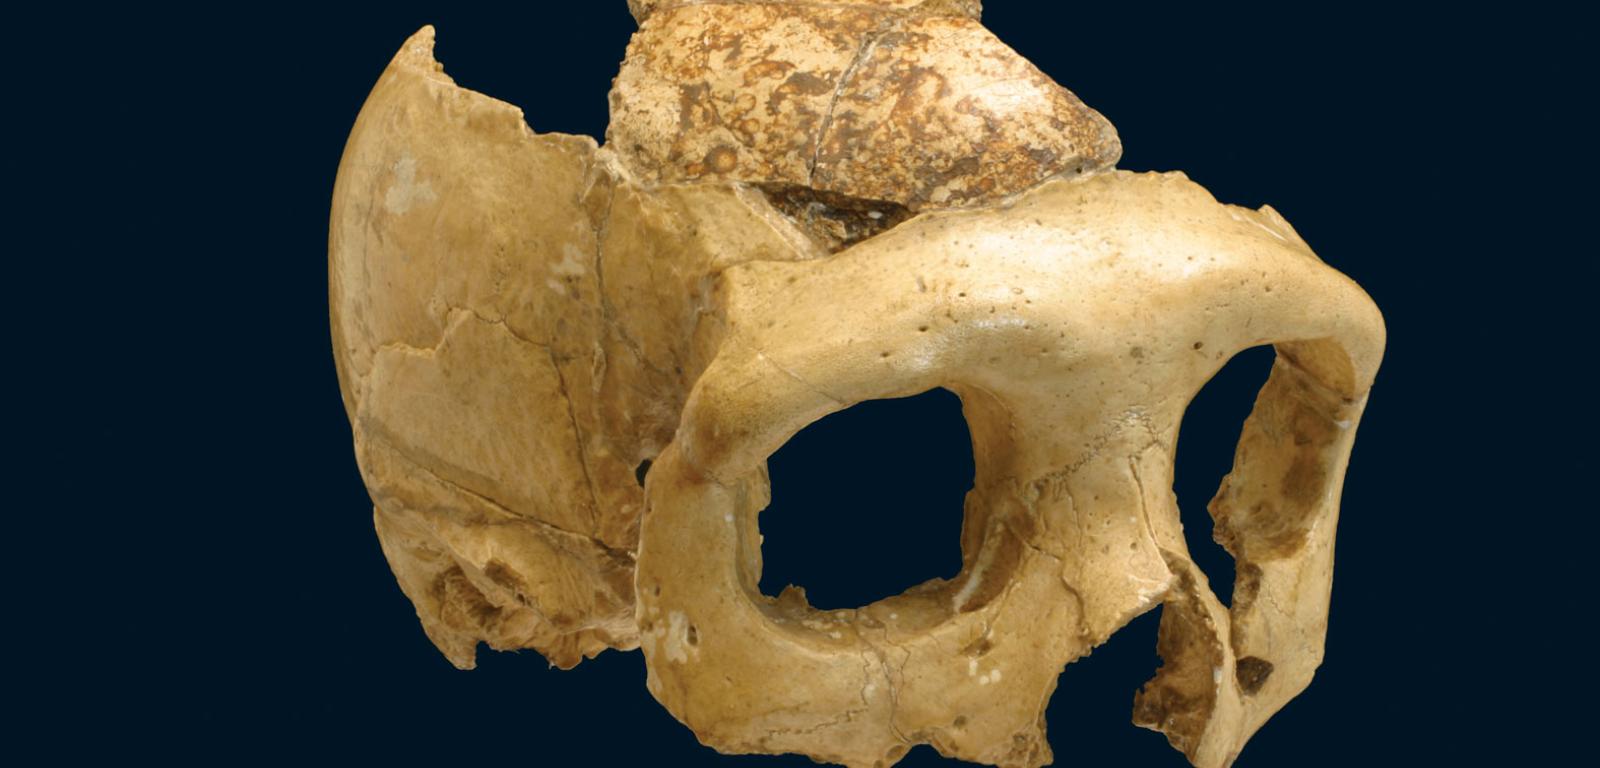 Na czaszce neandertalczyka z Krapiny widoczne są równoległe nacięcia, związane zapewne z jakimś rytuałem.